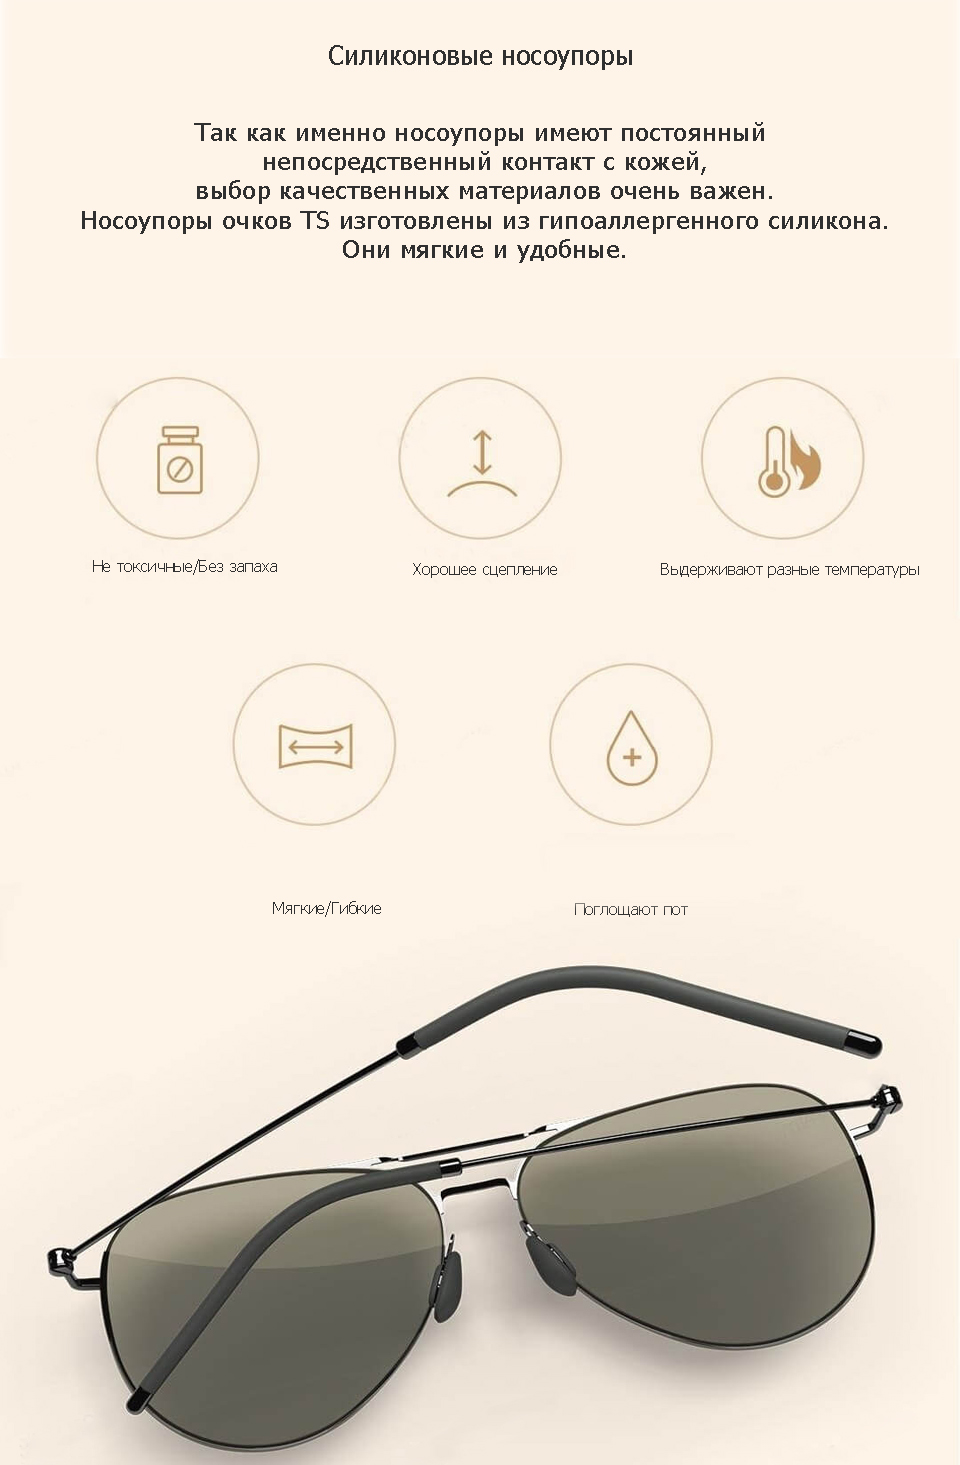 Очки Xiaomi Turok Steinhardt Sunglasses  силиконовые носоупоры